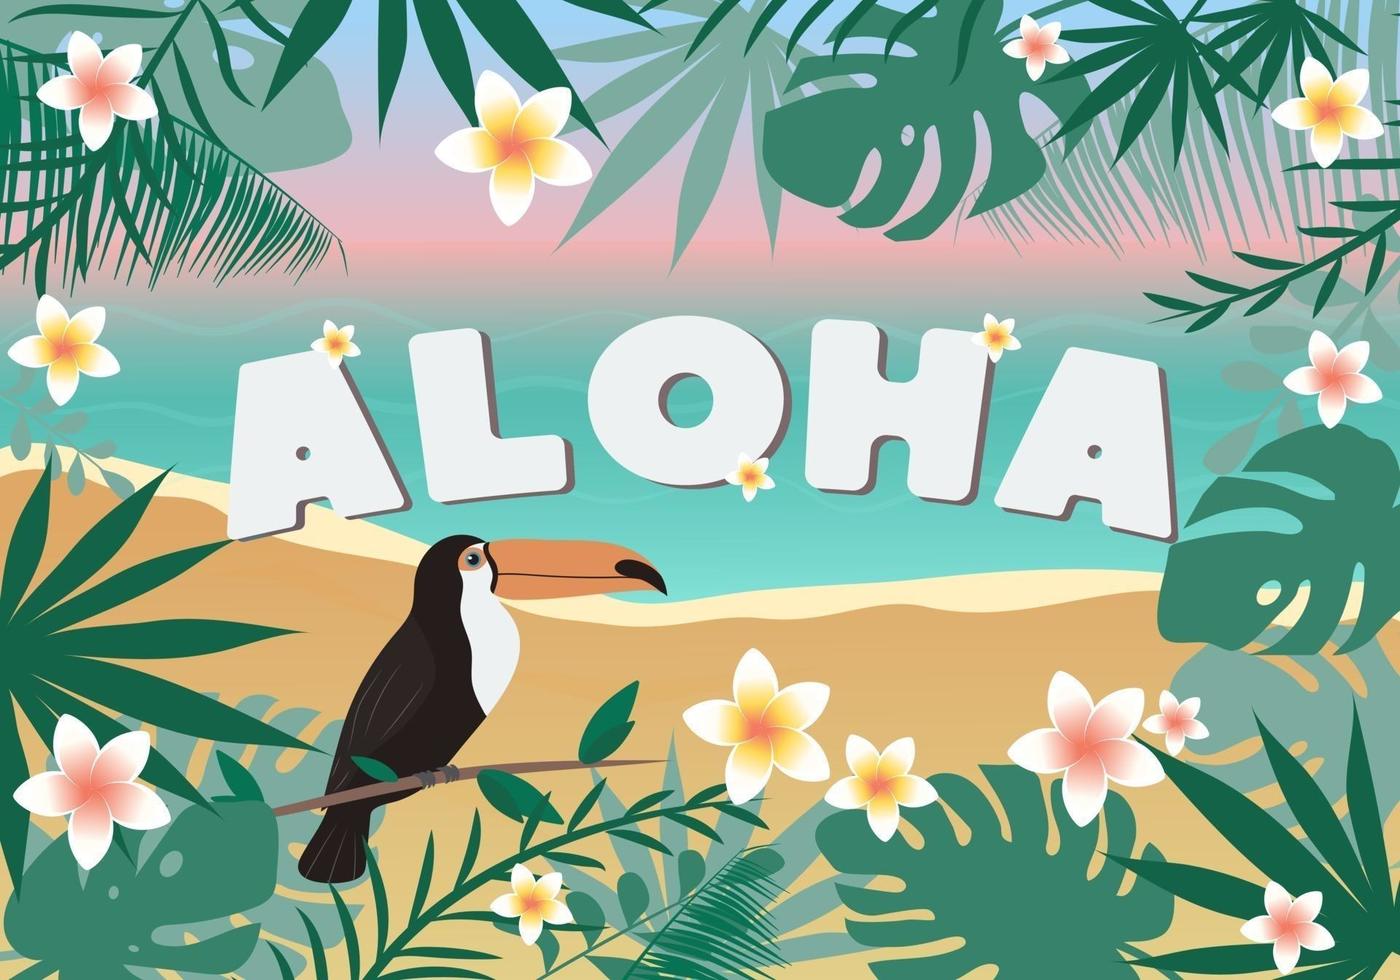 tarjeta aloha, invitación o afiche, con hojas tropicales, flores y tucán. concepto de verano. vector